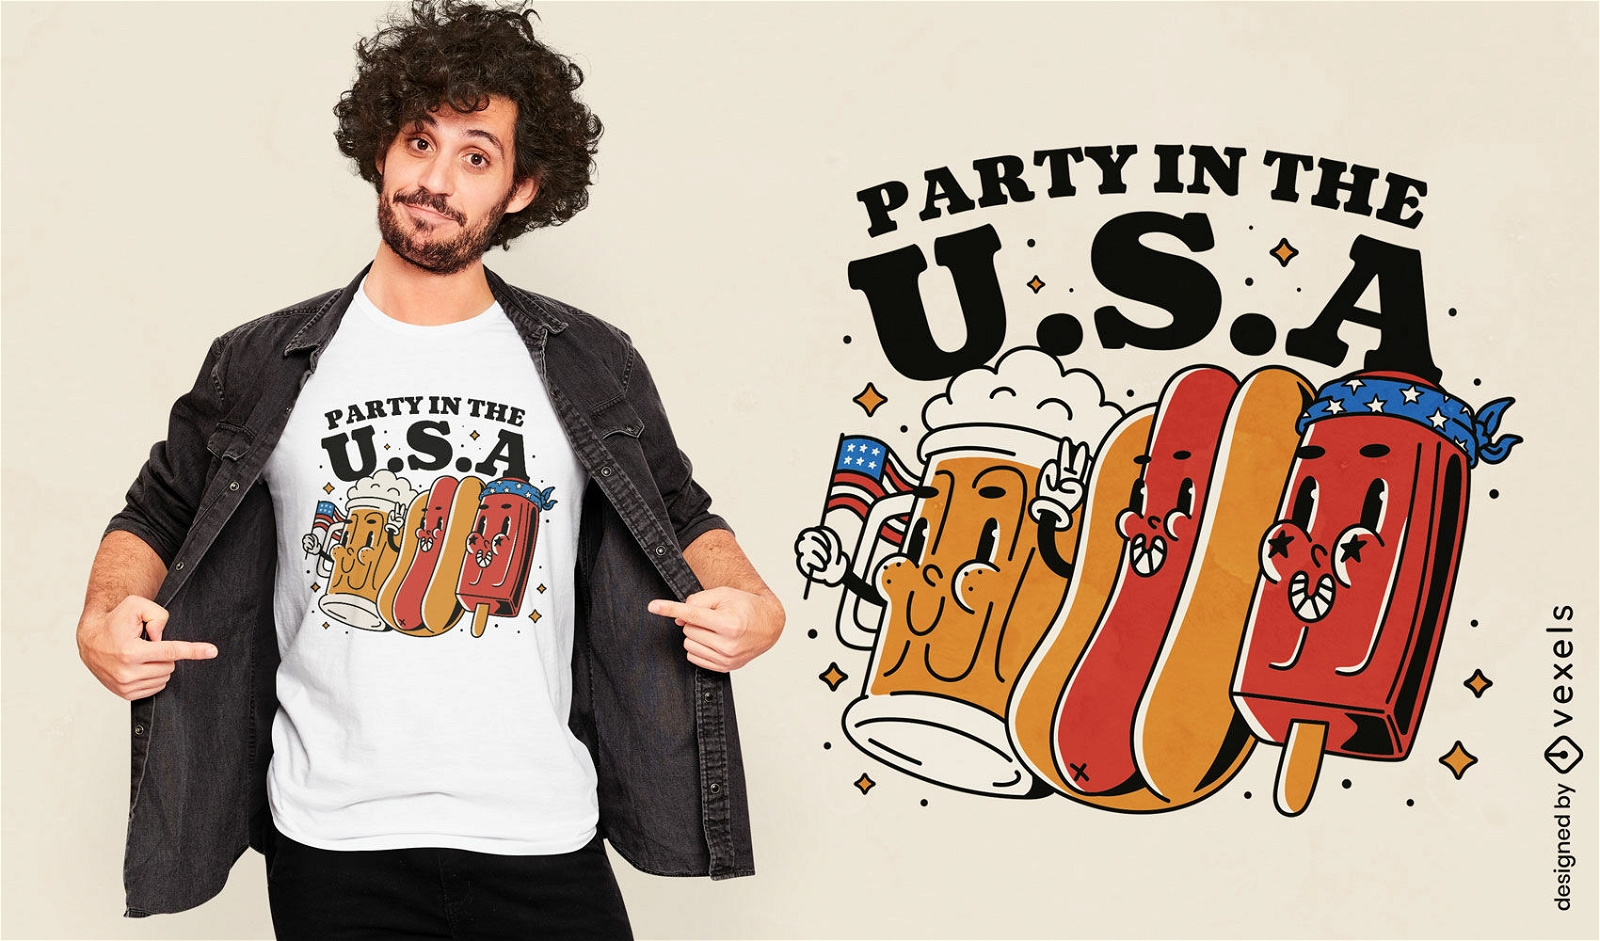 Hot Dog und Bier 4. Juli T-Shirt-Design